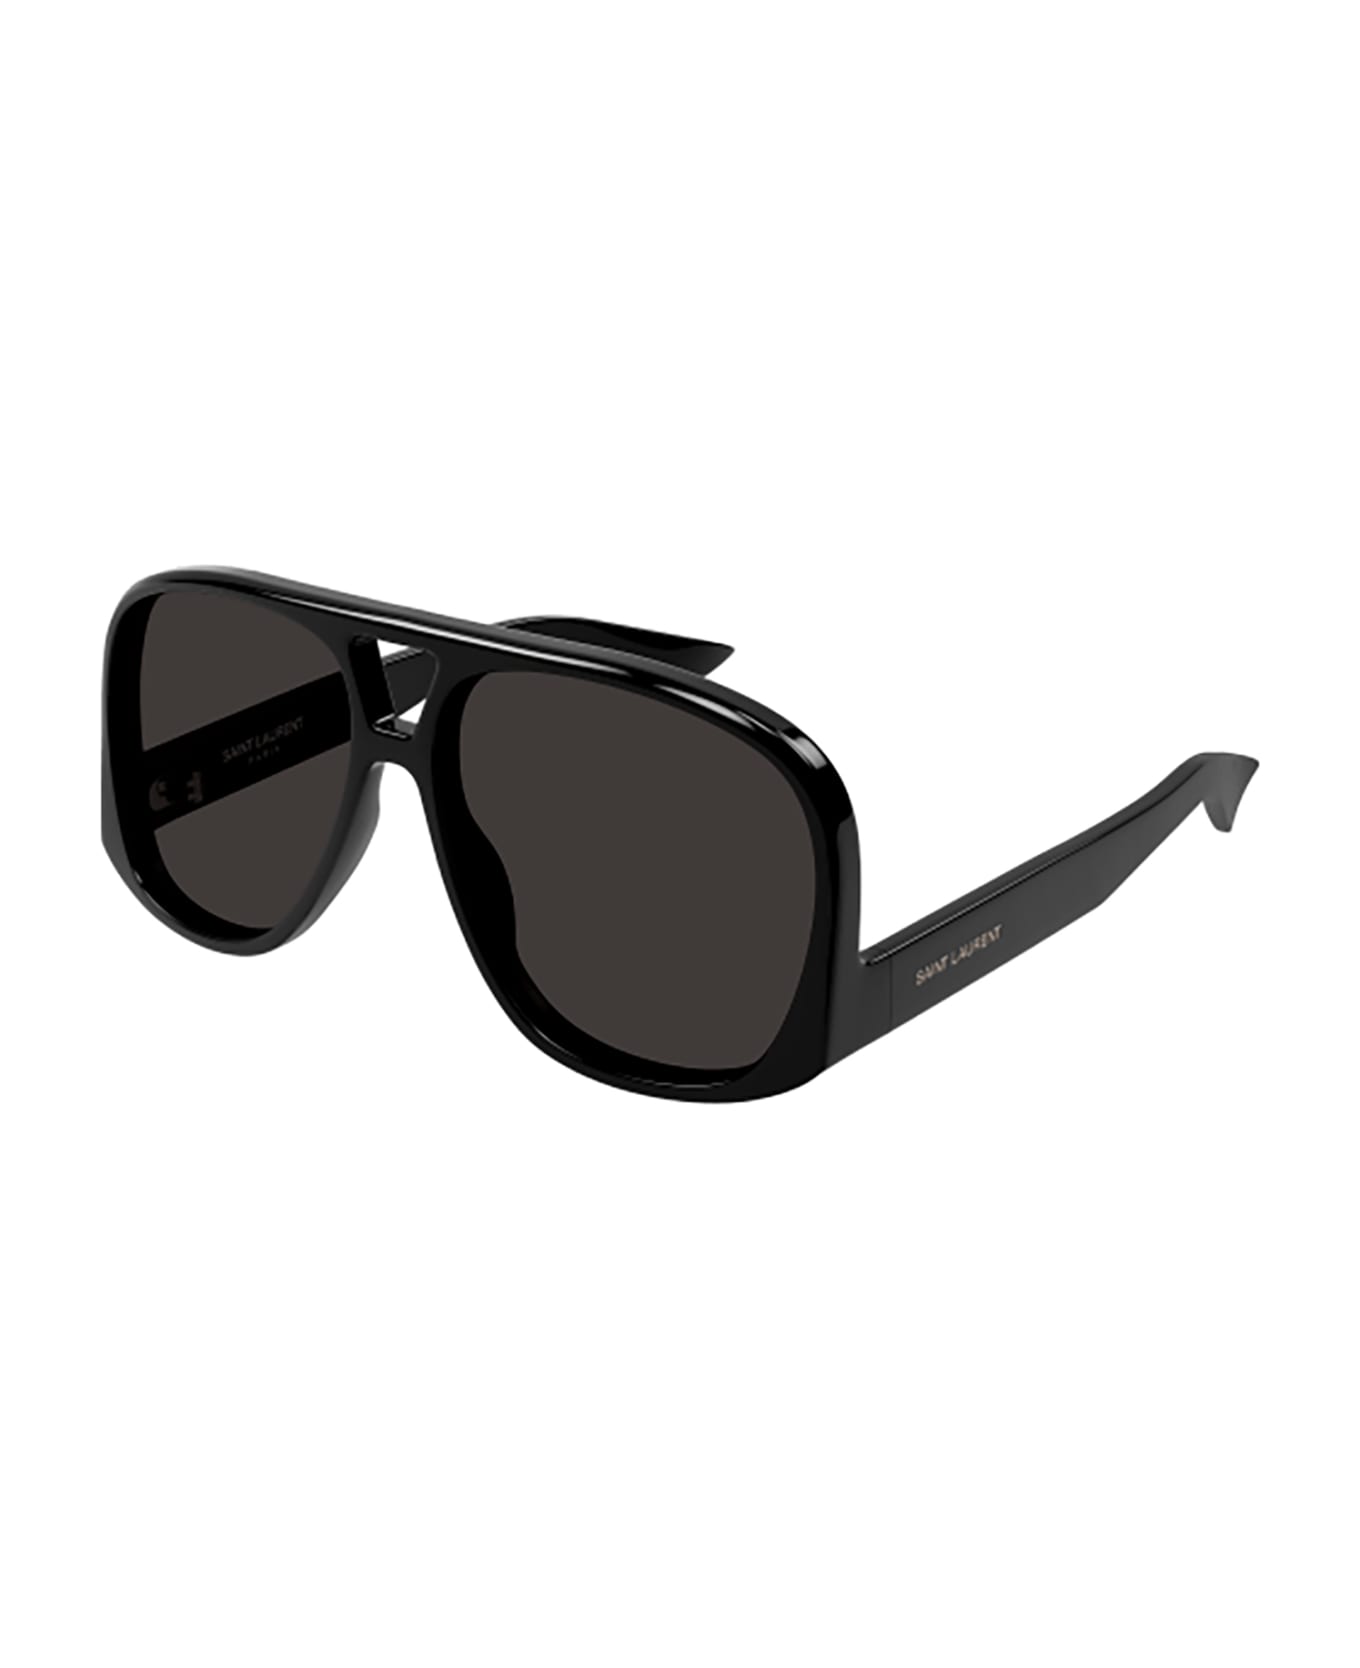 Saint Laurent Eyewear Sl 652 Solace Sunglasses - 001 black black black サングラス